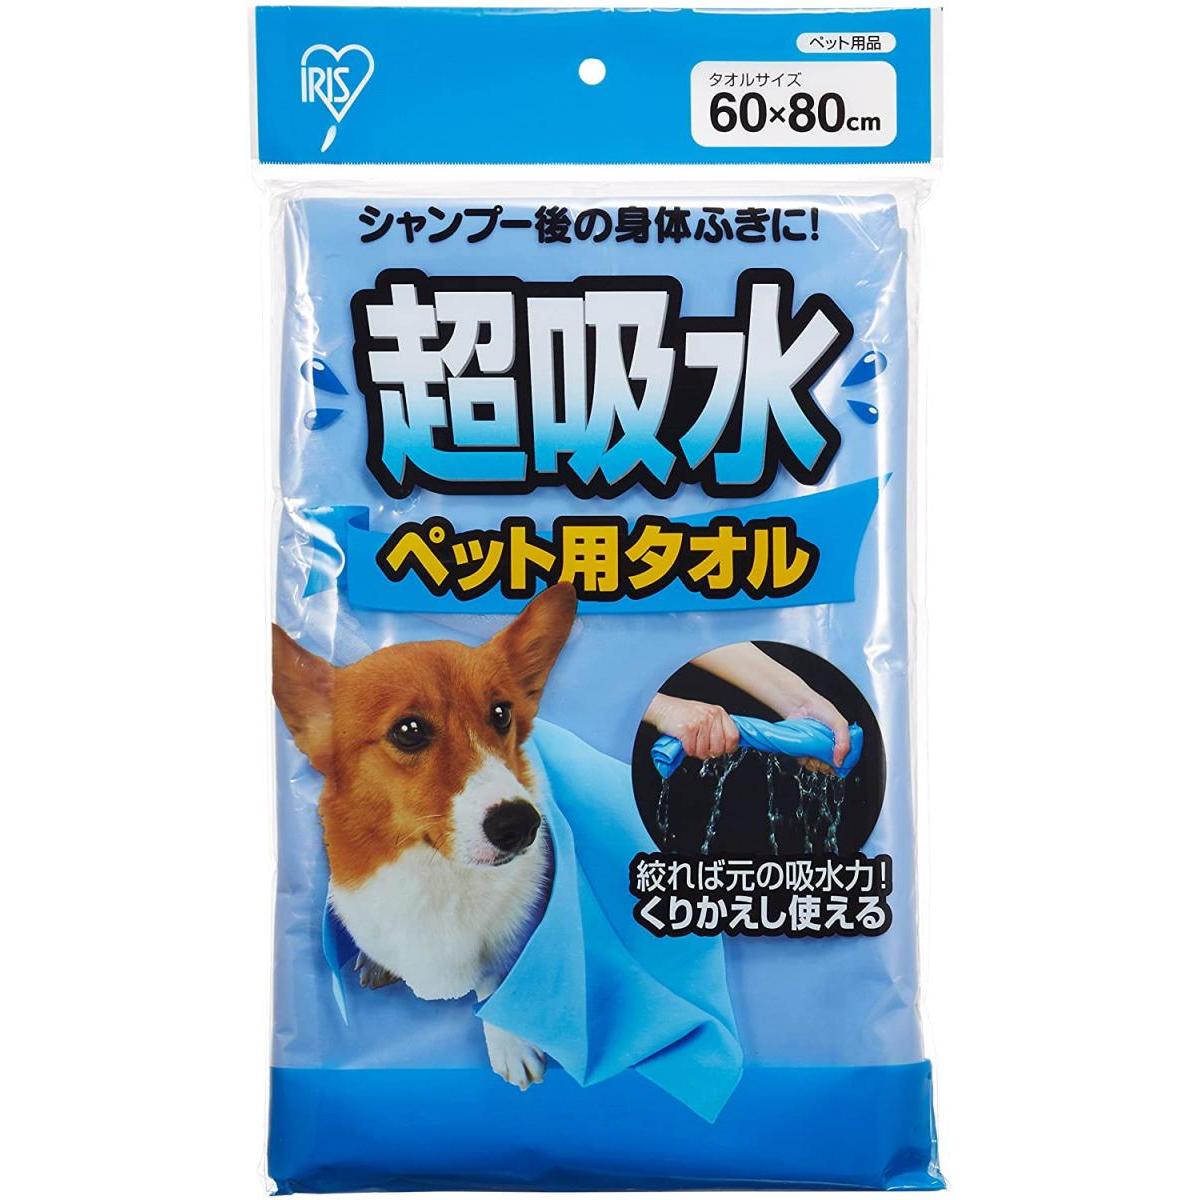 超吸水 ペット用 タオル Lサイズ アイリスオーヤマ CKT-L 中型犬 繰り返し使える ペットタオル ケア 清潔 体拭き 肌ざわり ソフト